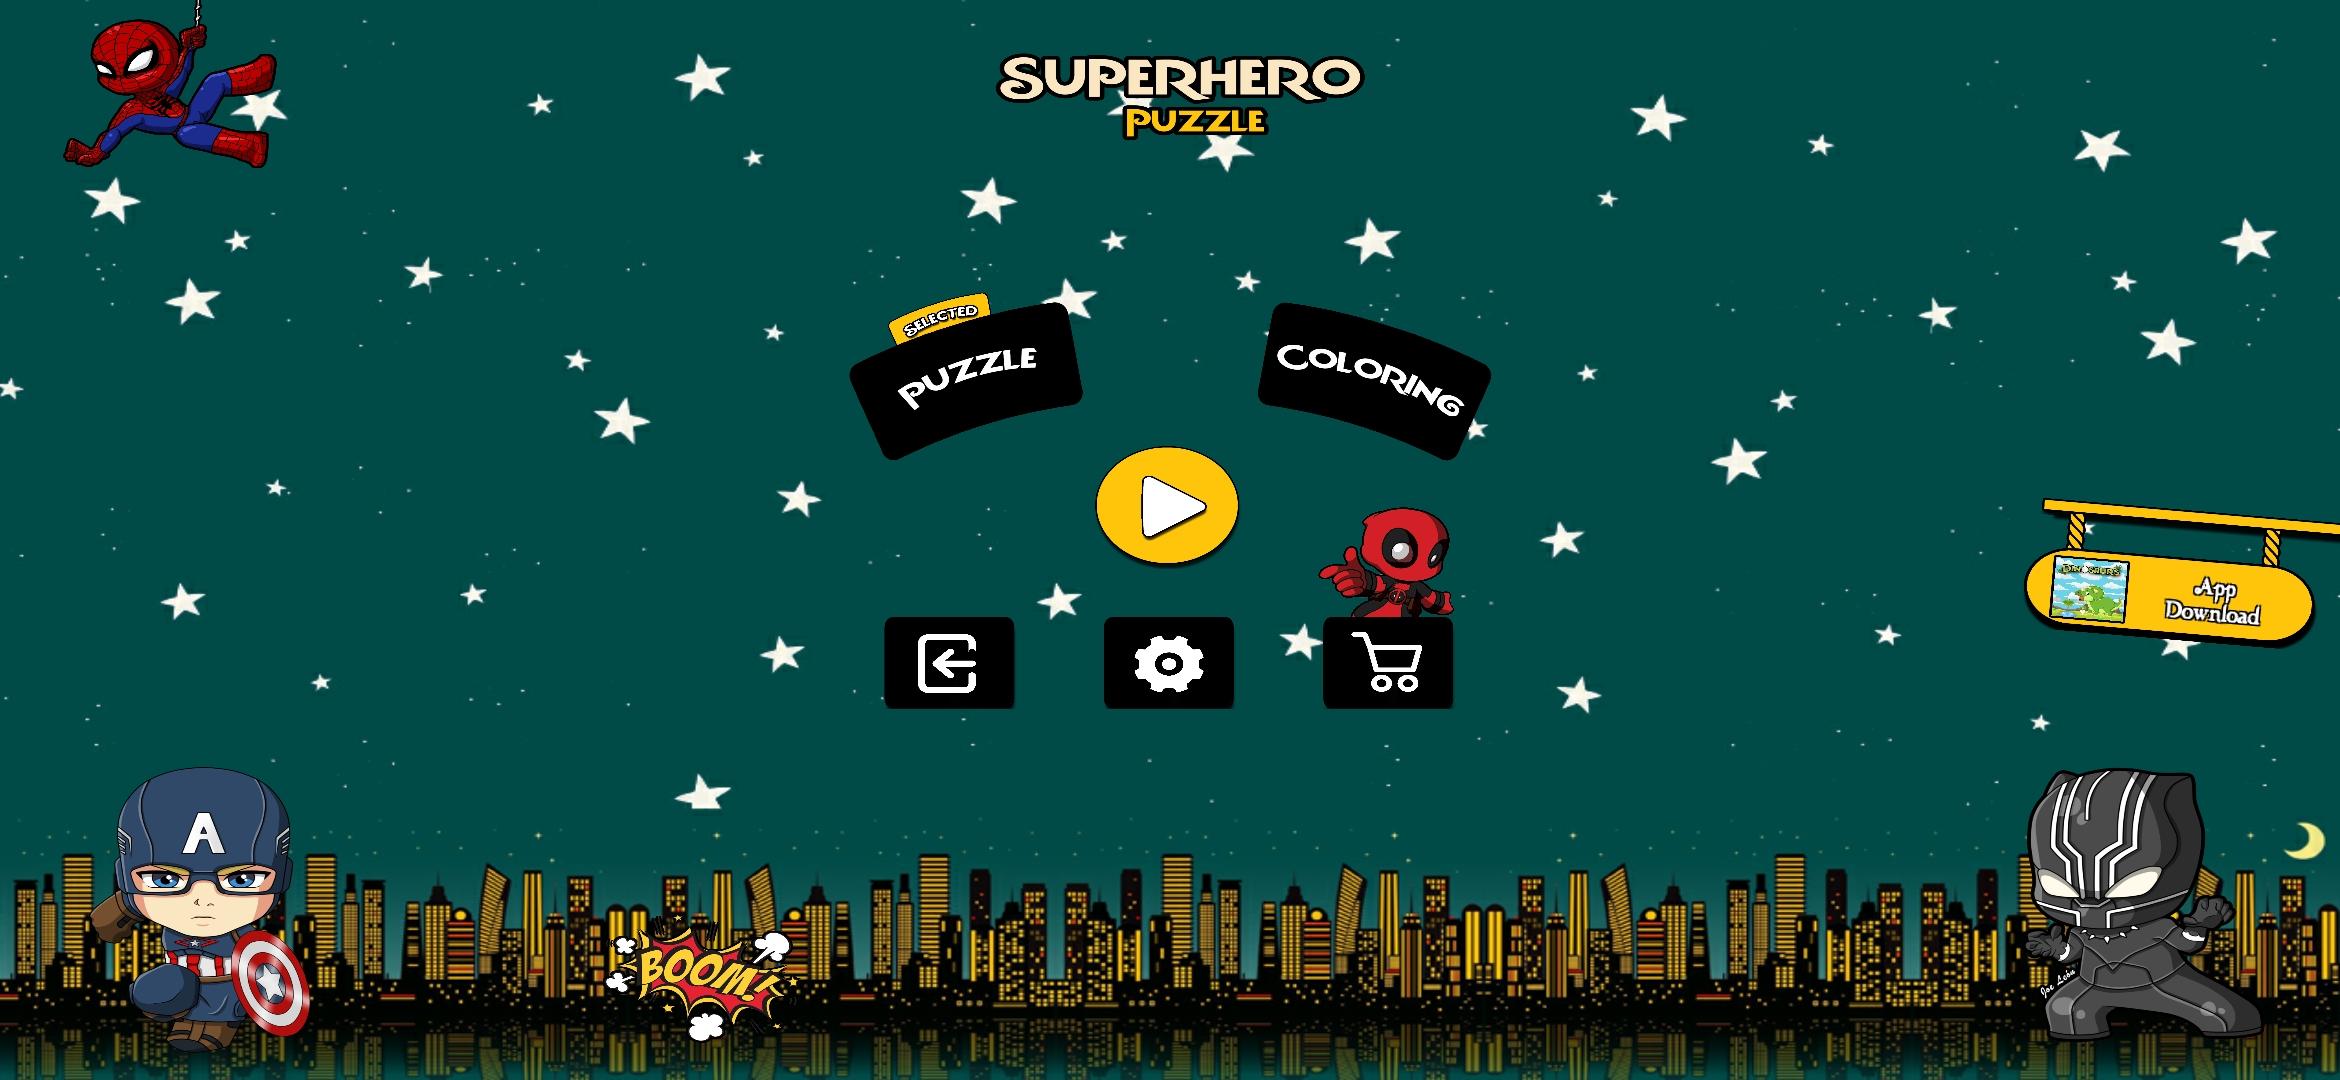 Rompecabezas de Superhéroes for Android - APK Download